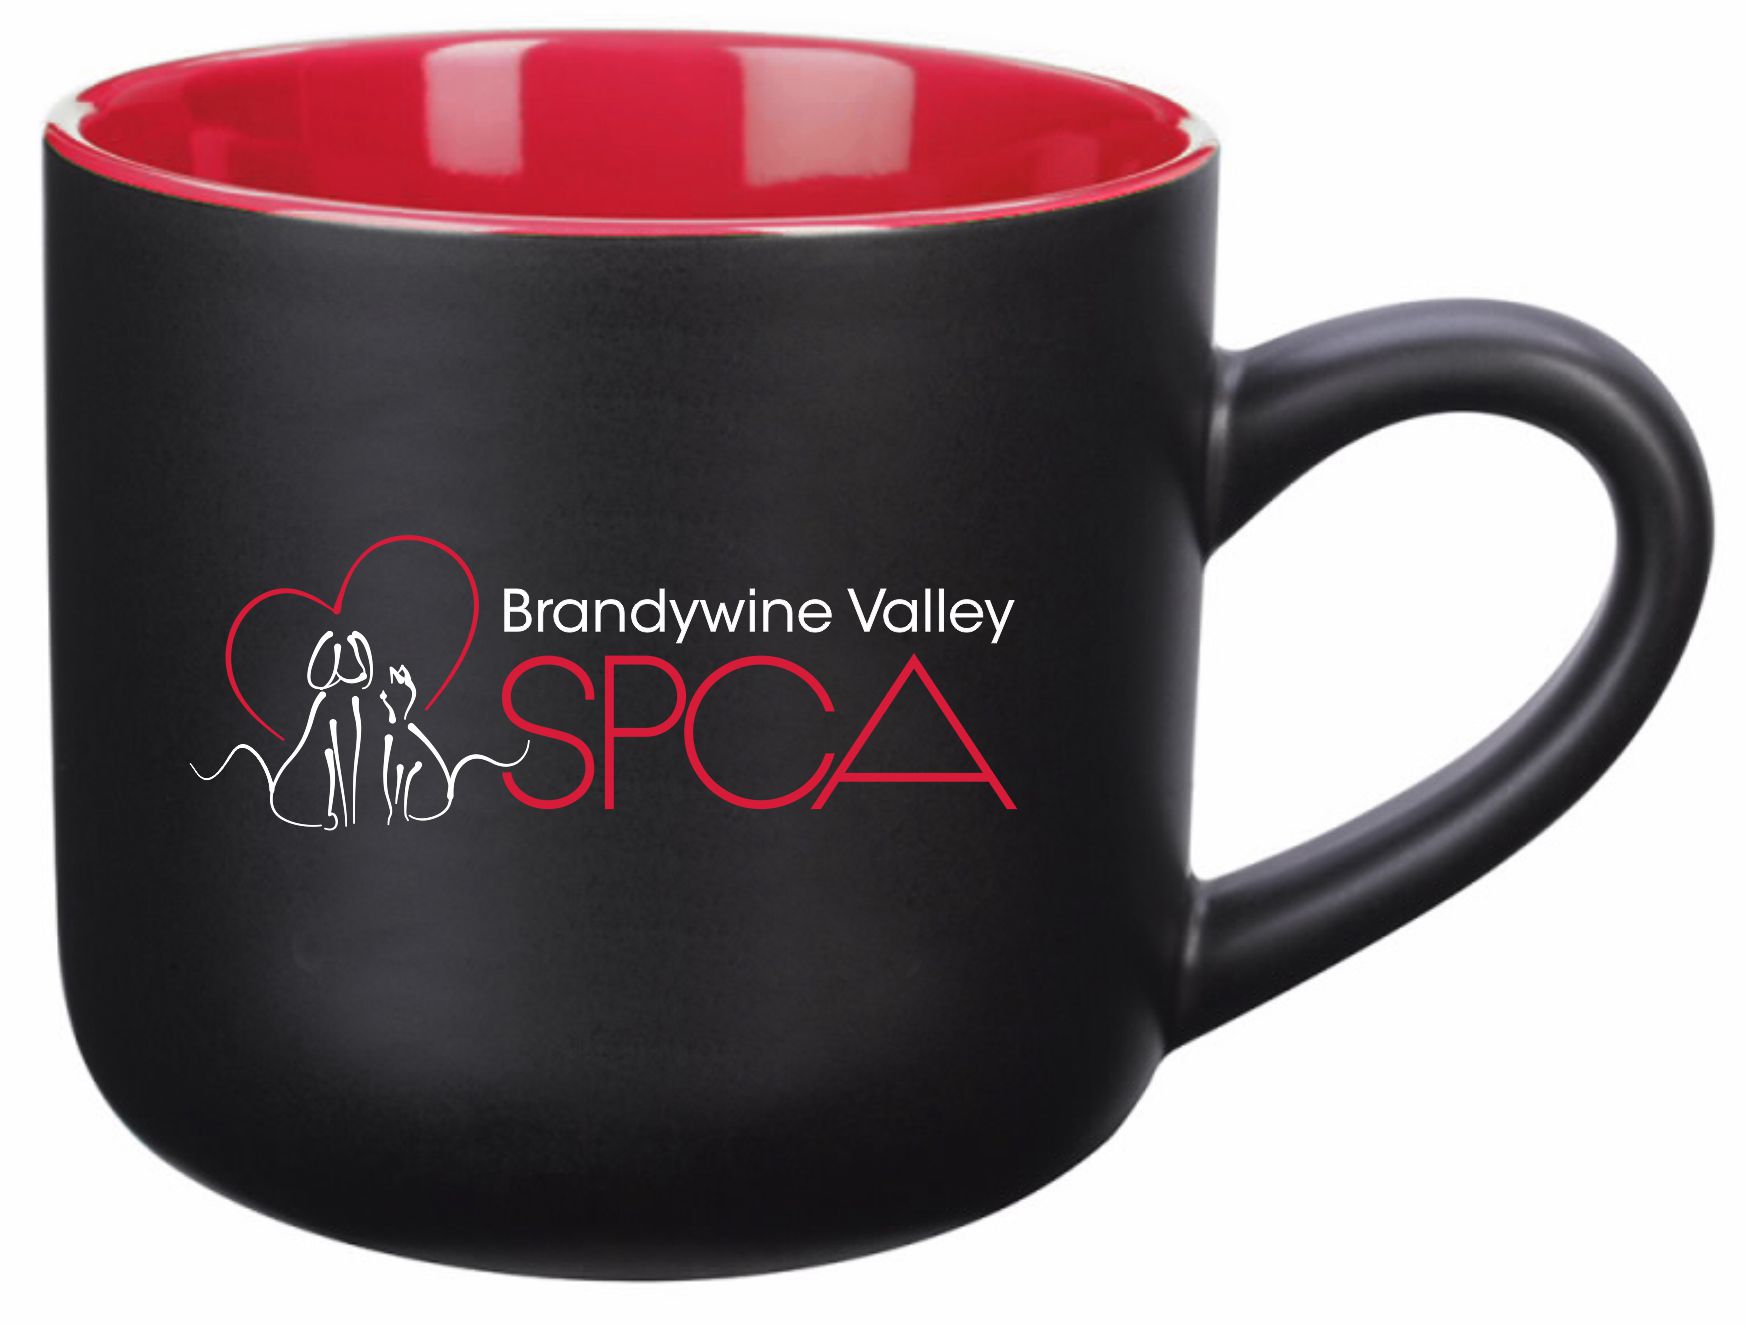 BVSPCA Ceramic Mug